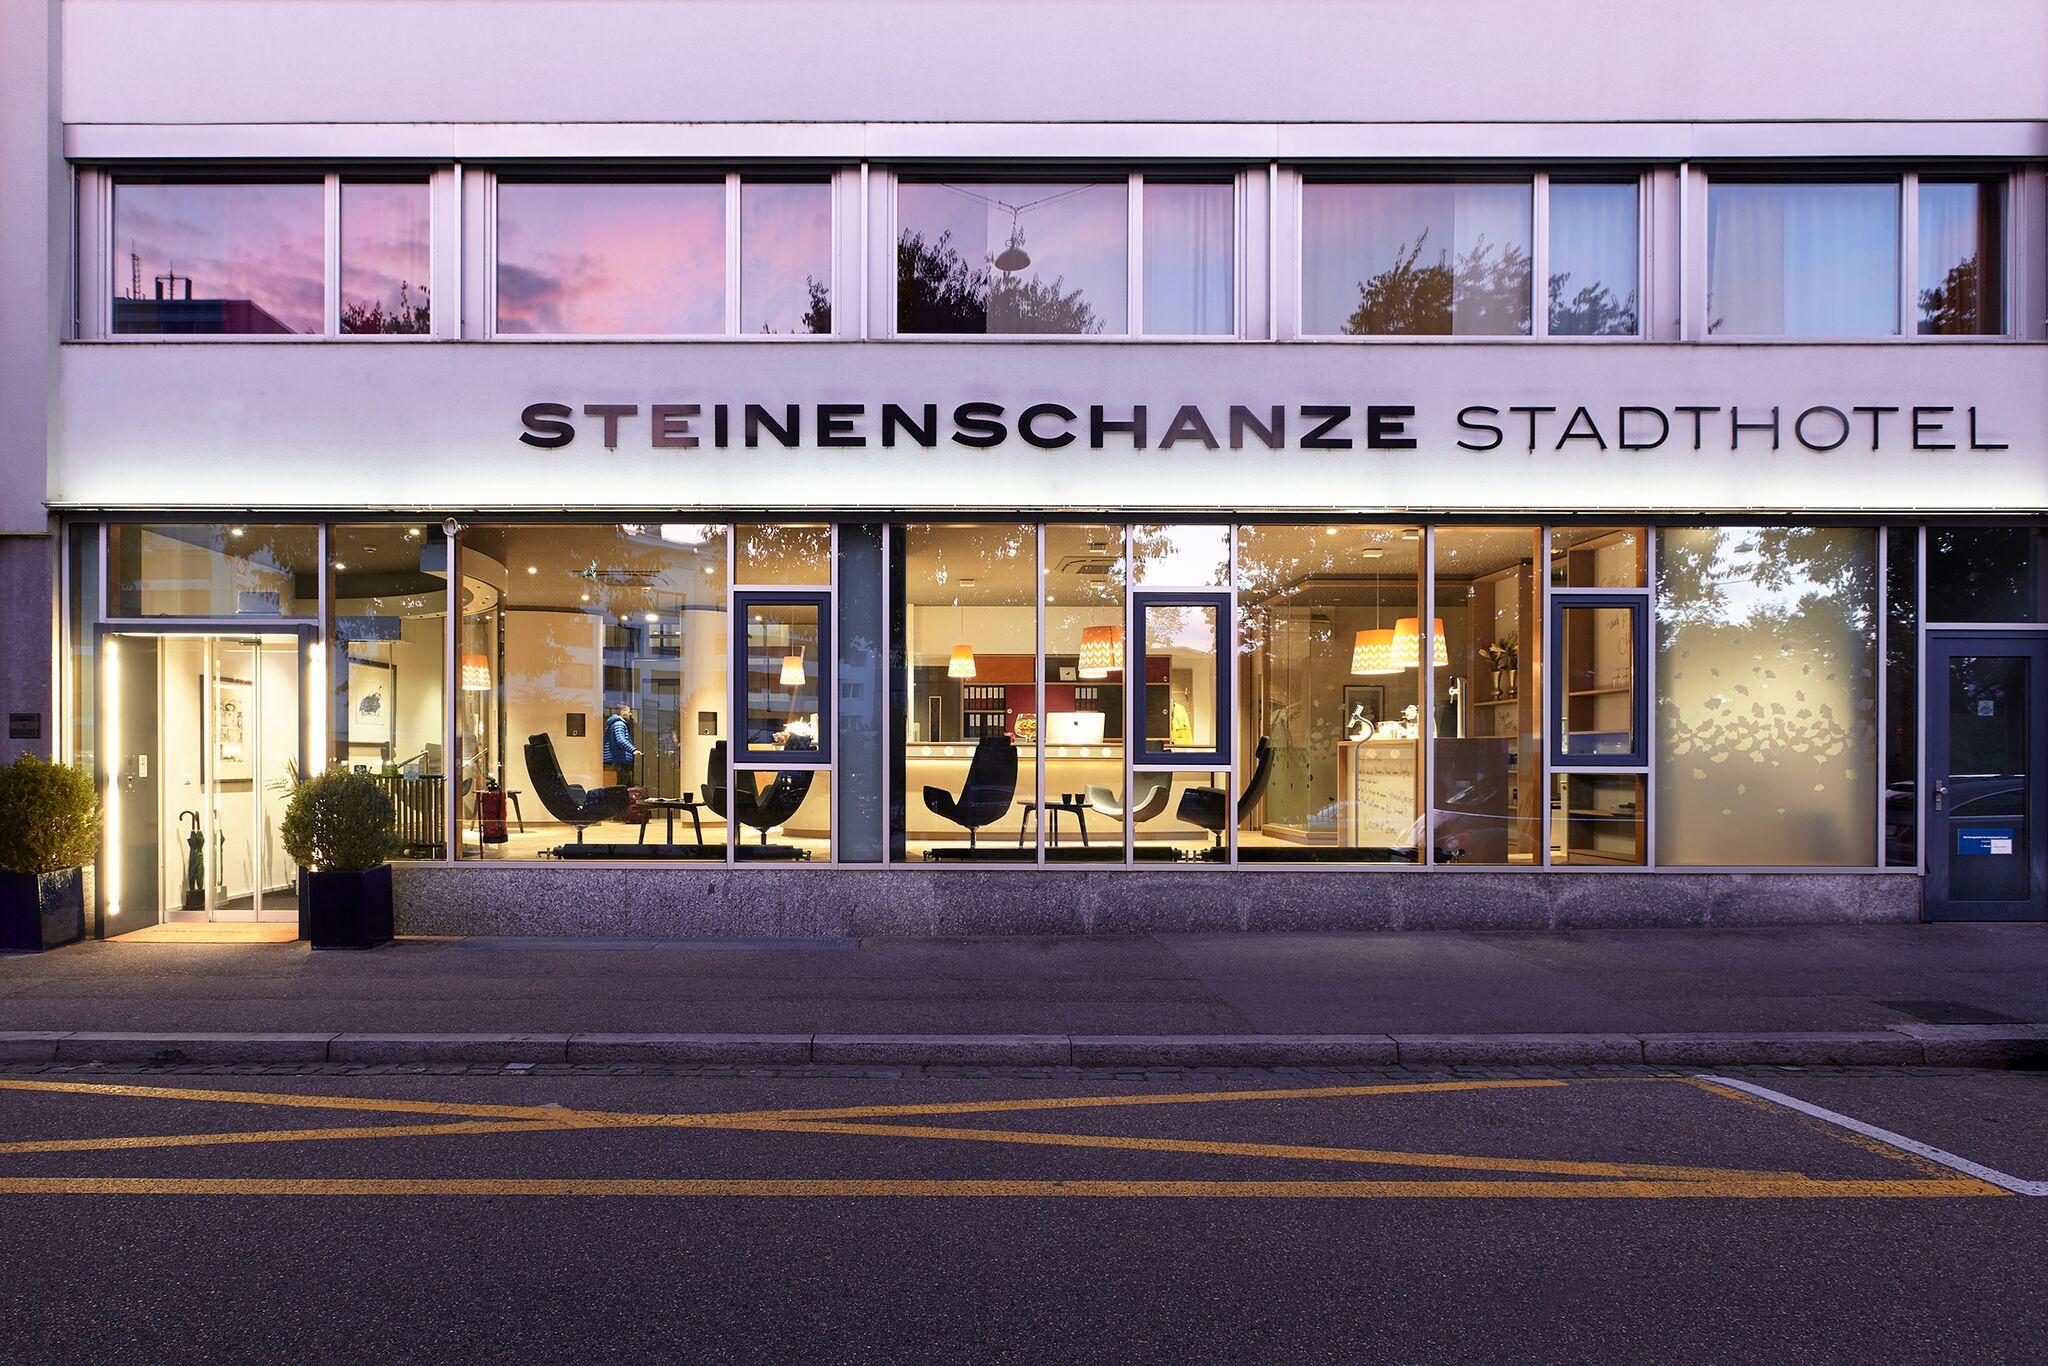 Steinenschanze Stadthotel 写真